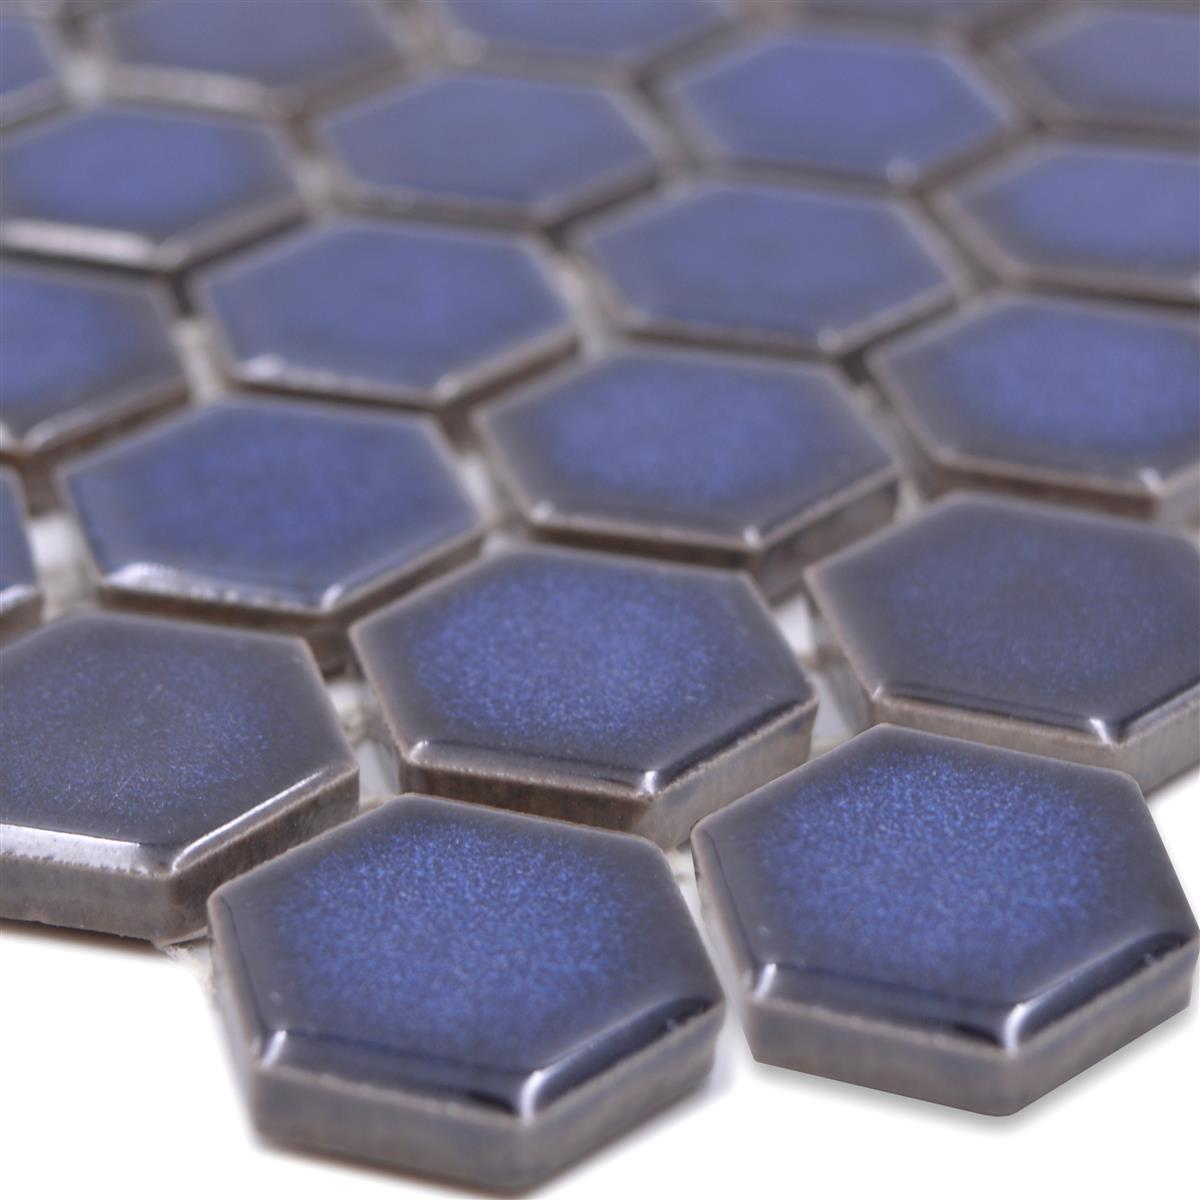 Sample van Keramiek Mozaïek Salomon Hexagon Kobalt Blauw H23